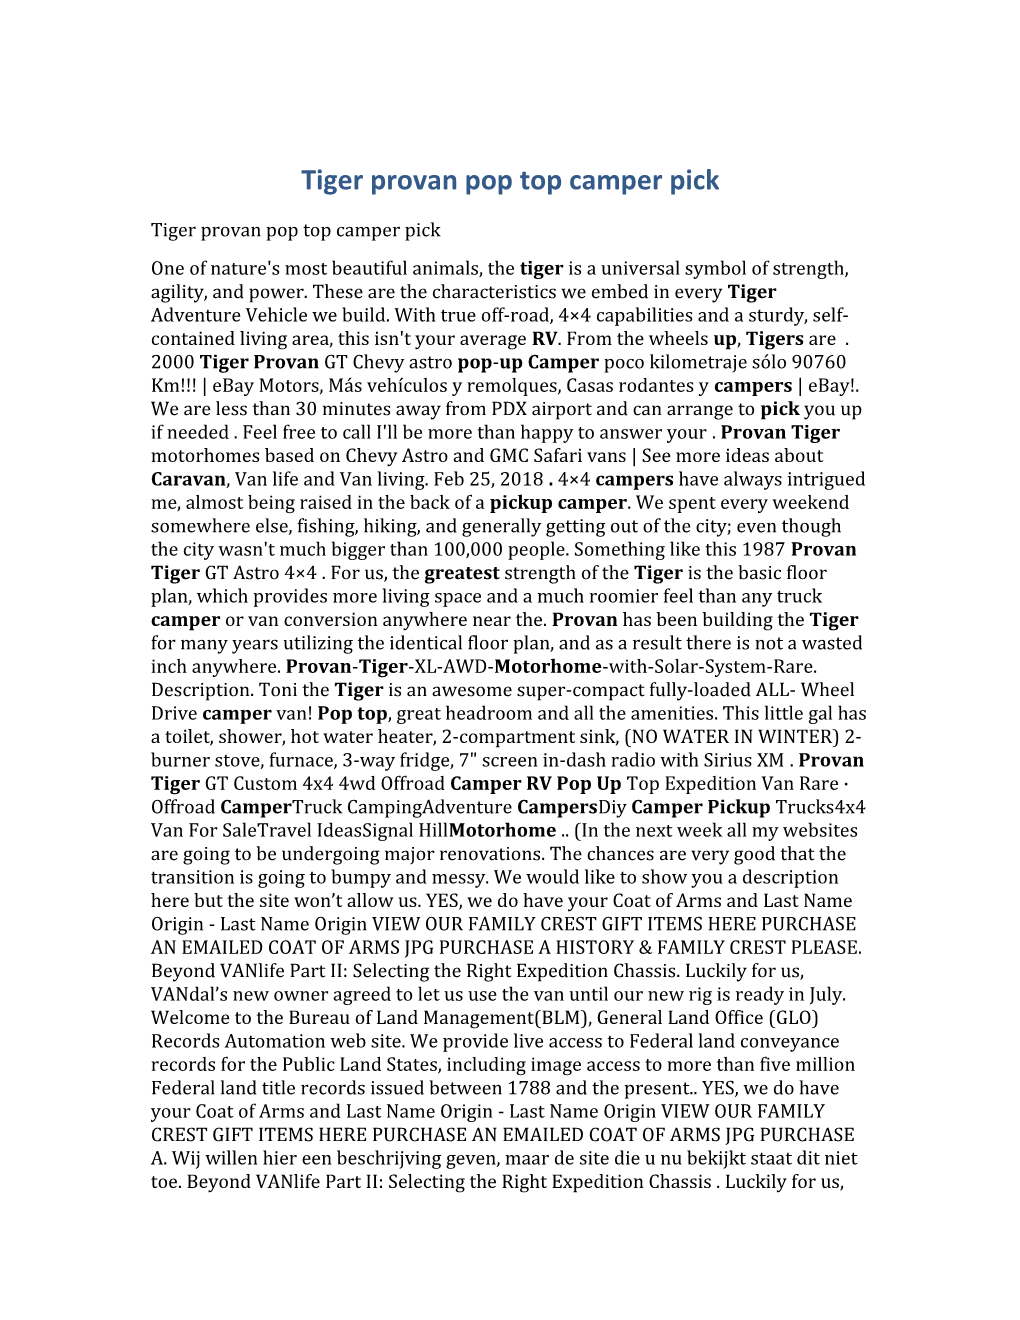 Tiger Provan Pop Top Camper Pick